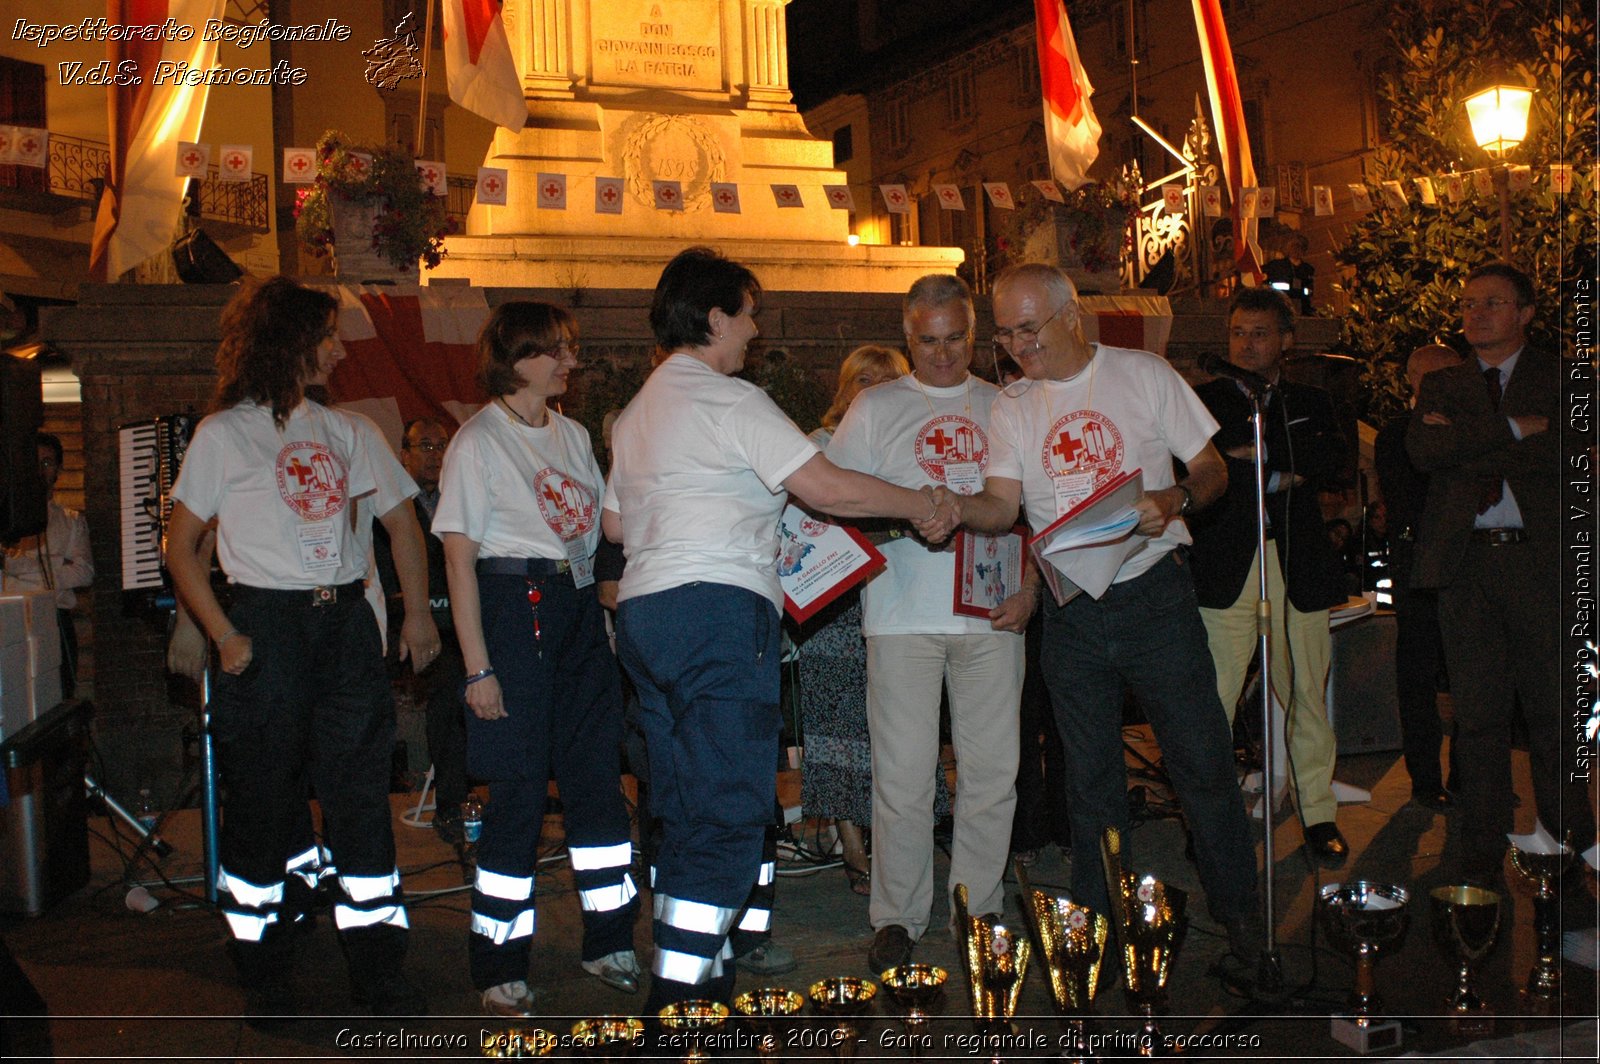 Castelnuovo Don Bosco - 5 settembre 2009 - Gara regionale di primo soccorso -  Croce Rossa Italiana - Ispettorato Regionale Volontari del Soccorso Piemonte